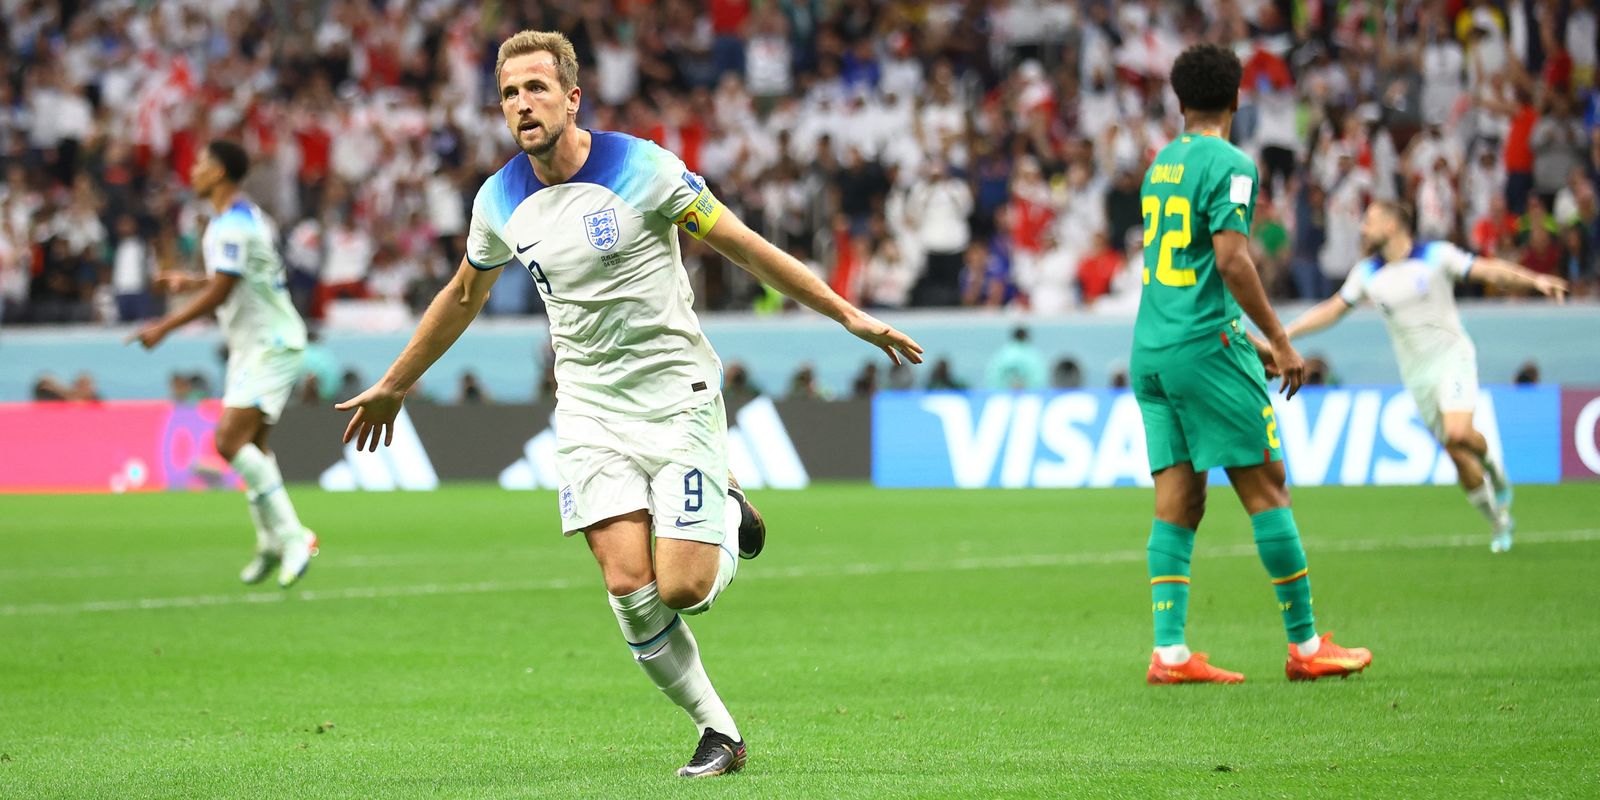 Pas de problème, l’Angleterre envoie le Sénégal et affronte la France en quart de finale